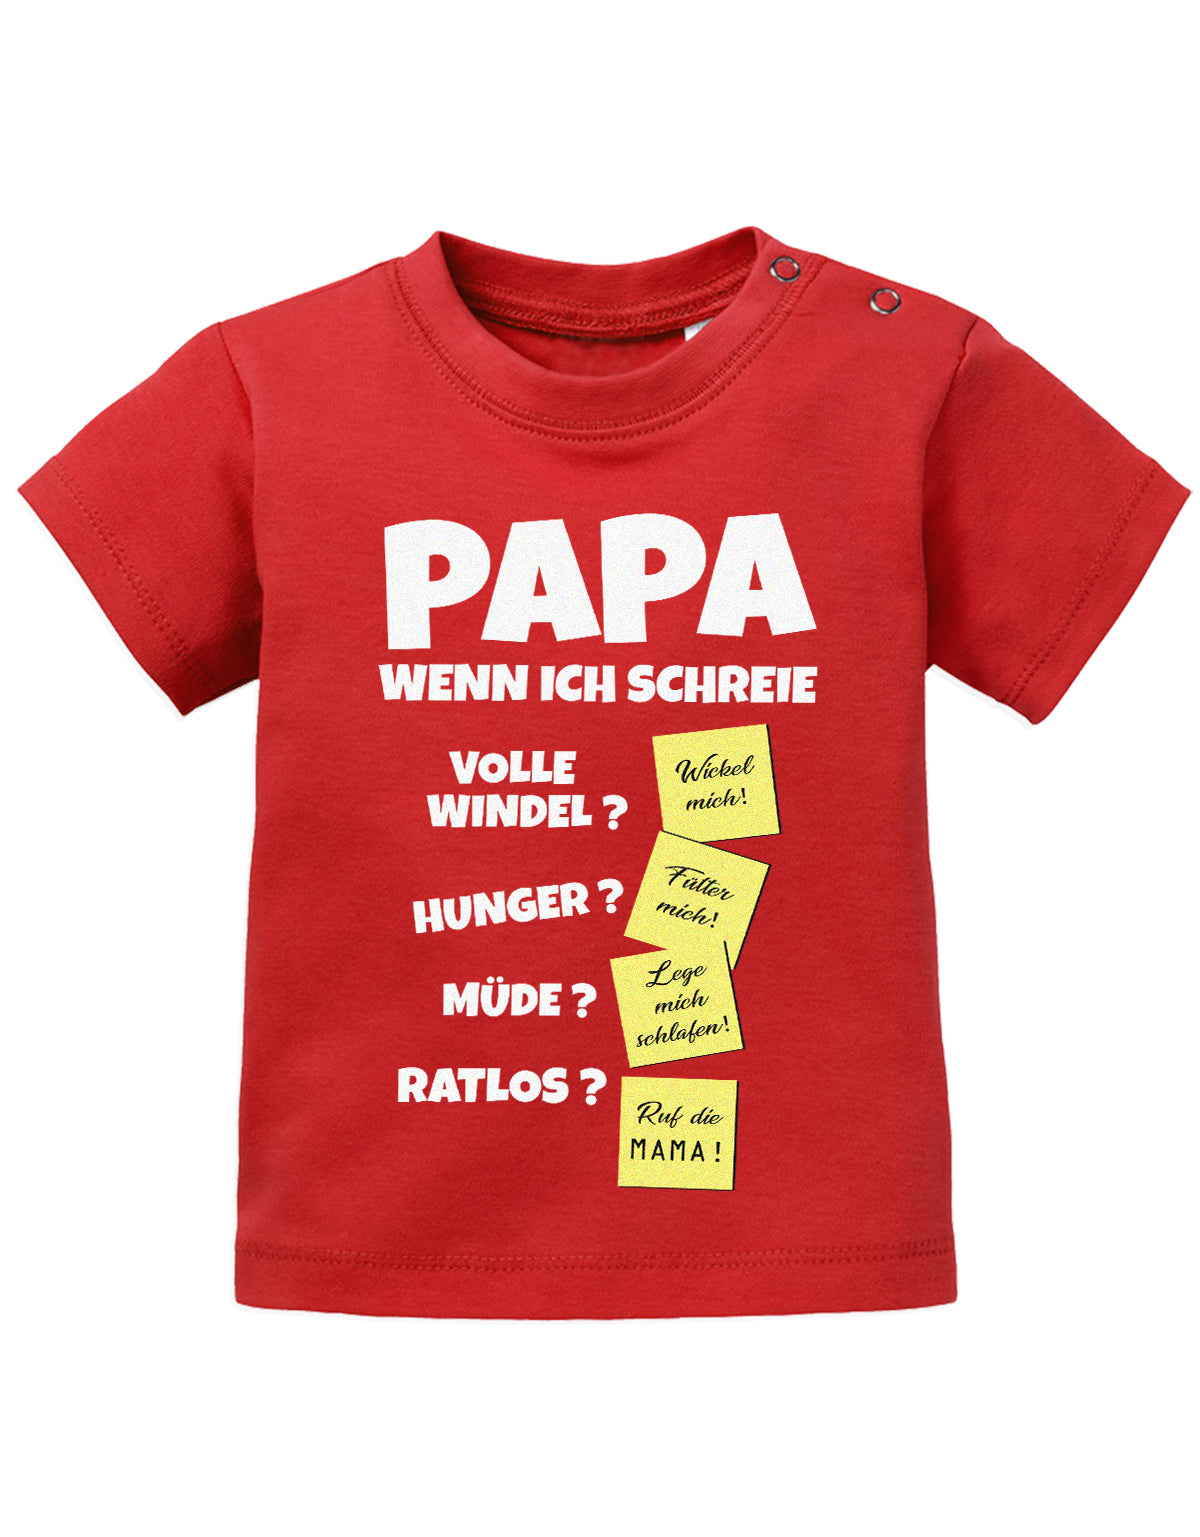 Lustiges süßes Sprüche Baby Shirt Papa wenn ich schreie - Notizen Lösungen. Rot